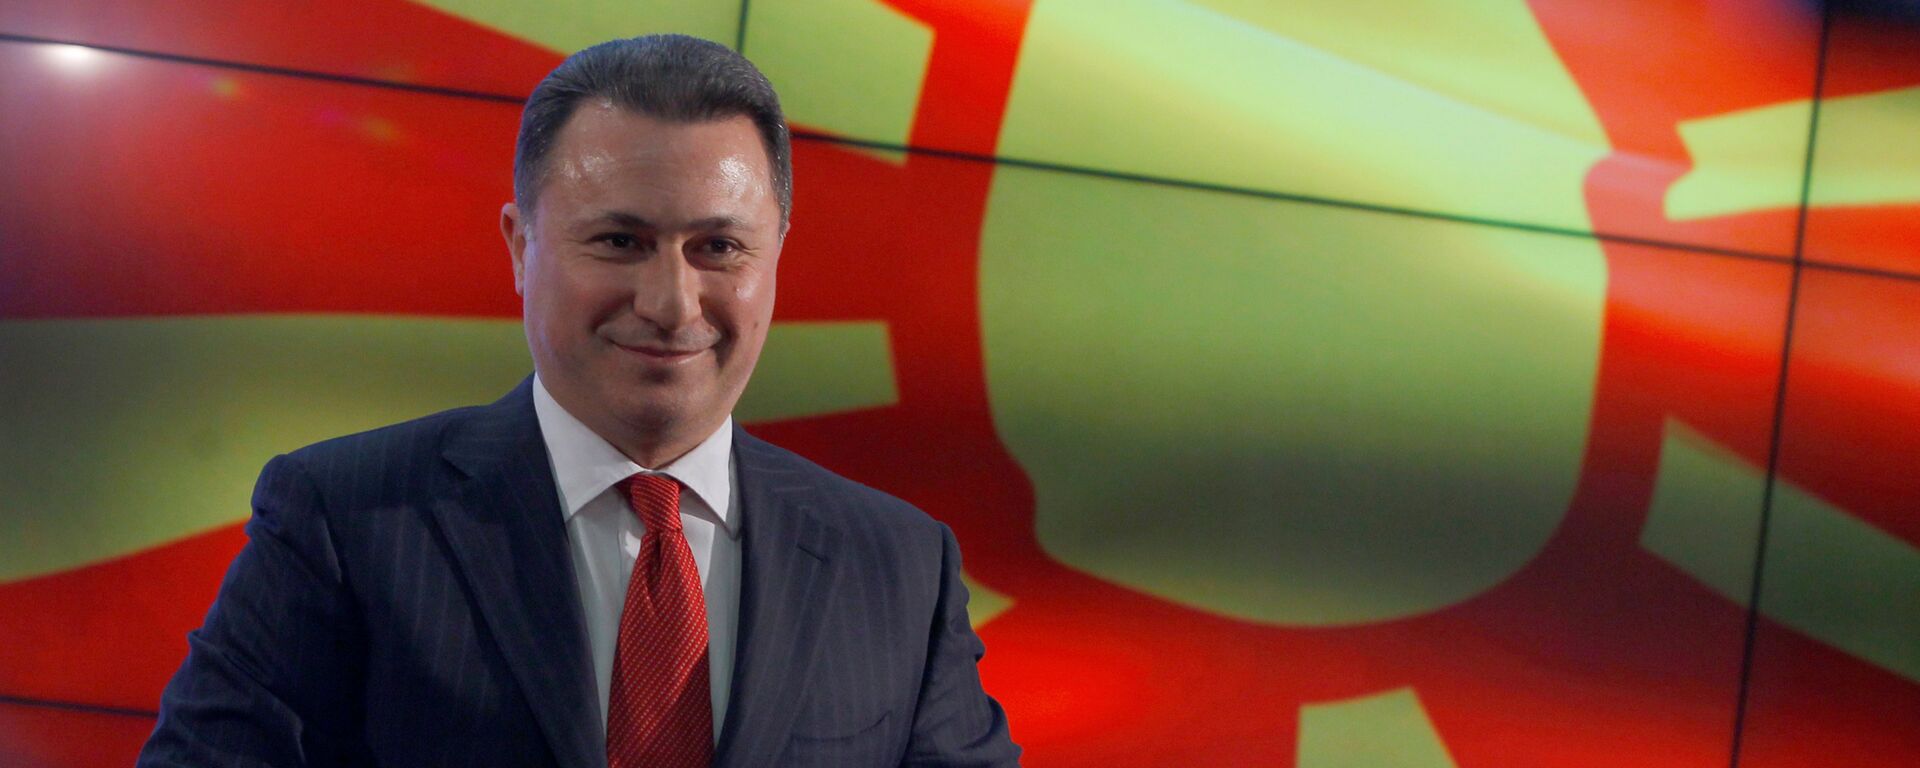 Nikola Gruevski - Sputnik Srbija, 1920, 29.09.2020